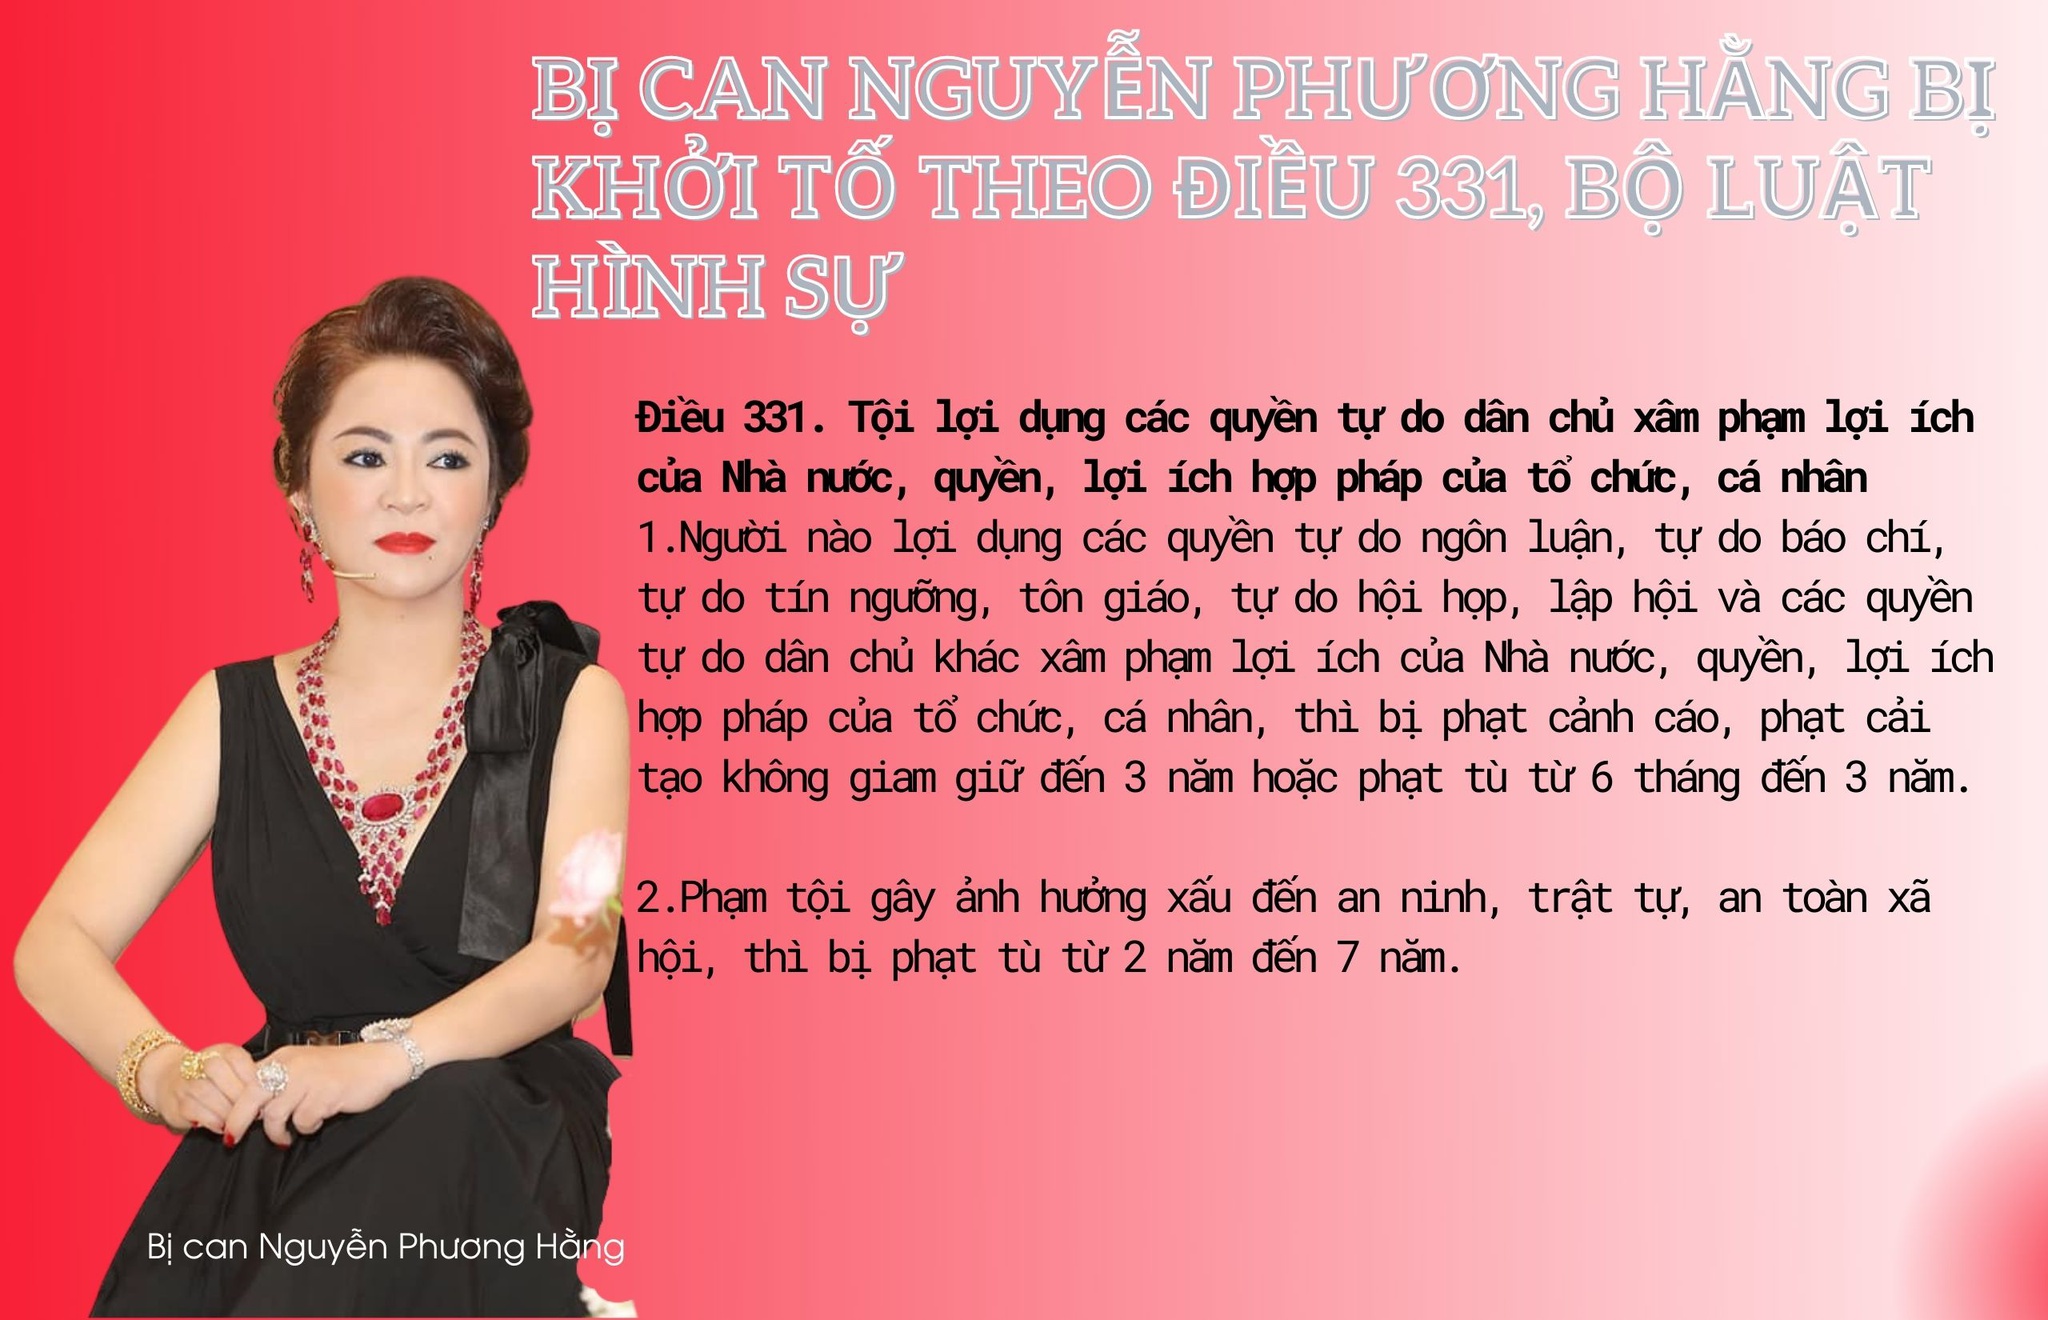 Bà Nguyễn Phương Hằng bị khởi tố, bắt tạm giam - ảnh 1